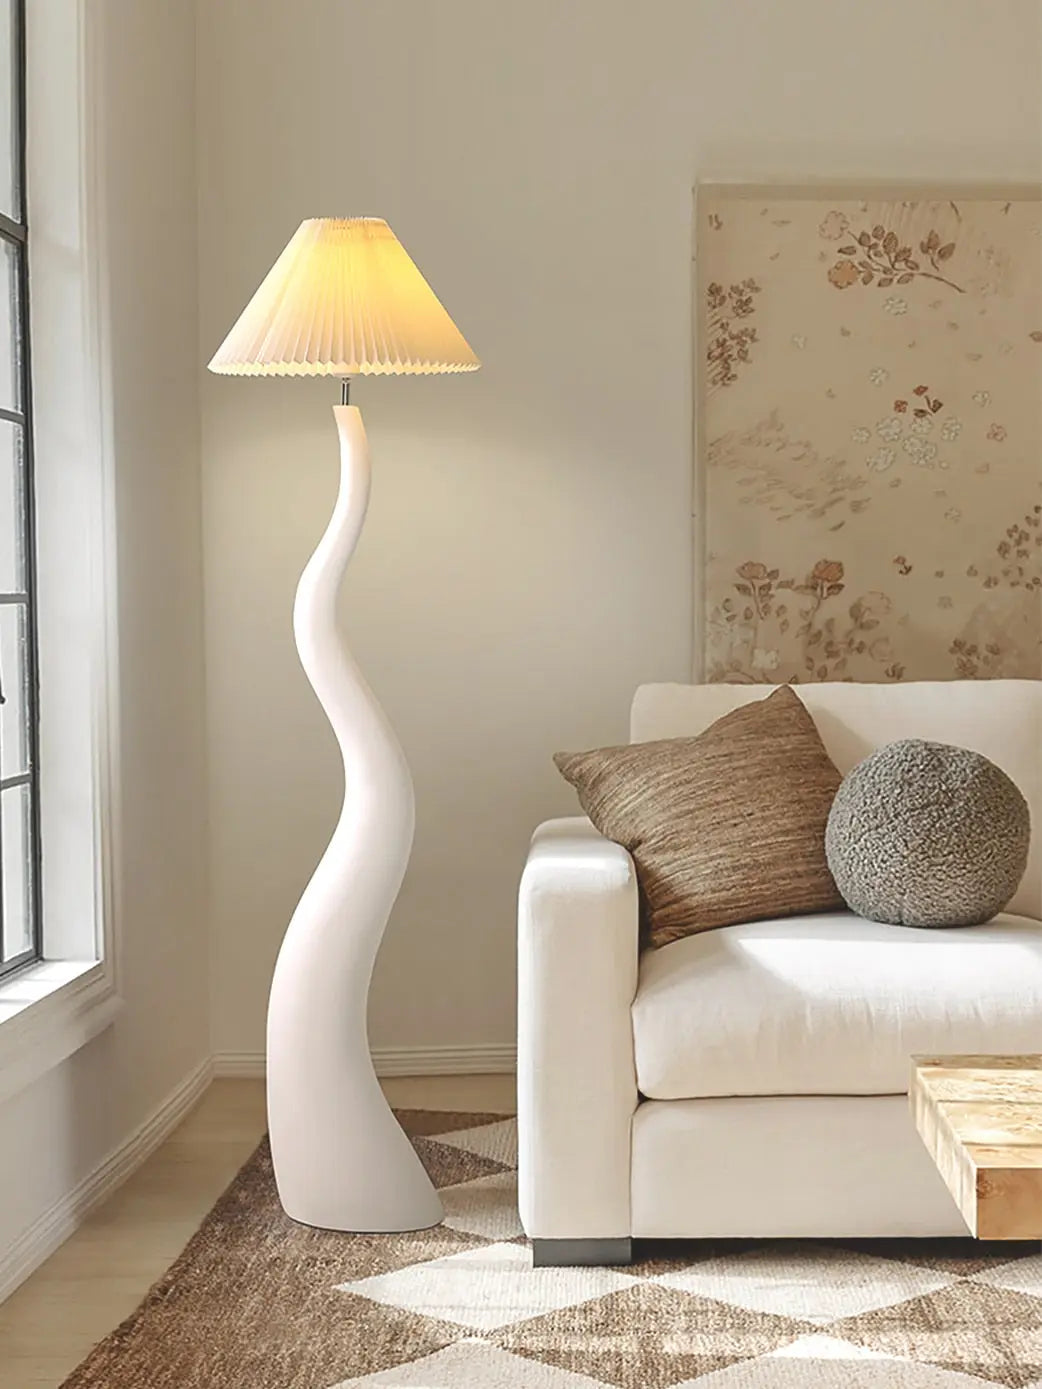 Designer Cream Resin Floor Lamp LED E27 Atmosphere Vertical Table Lamp for Living/Model Room Decoration Bedroom Study Studio Bar